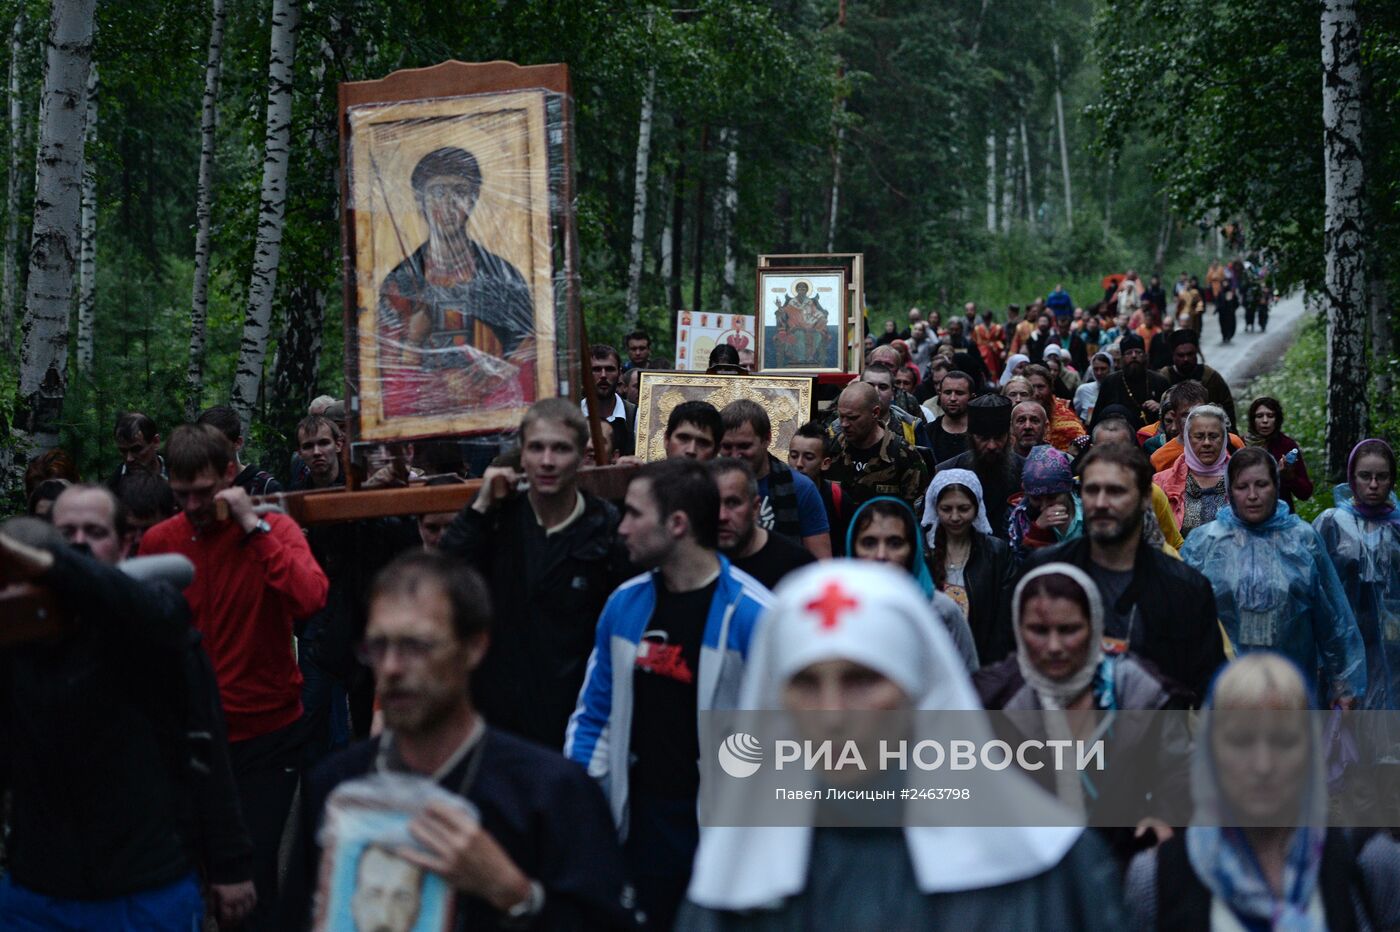 Крестный ход в память о гибели царской семьи Романовых в Екатеринбурге